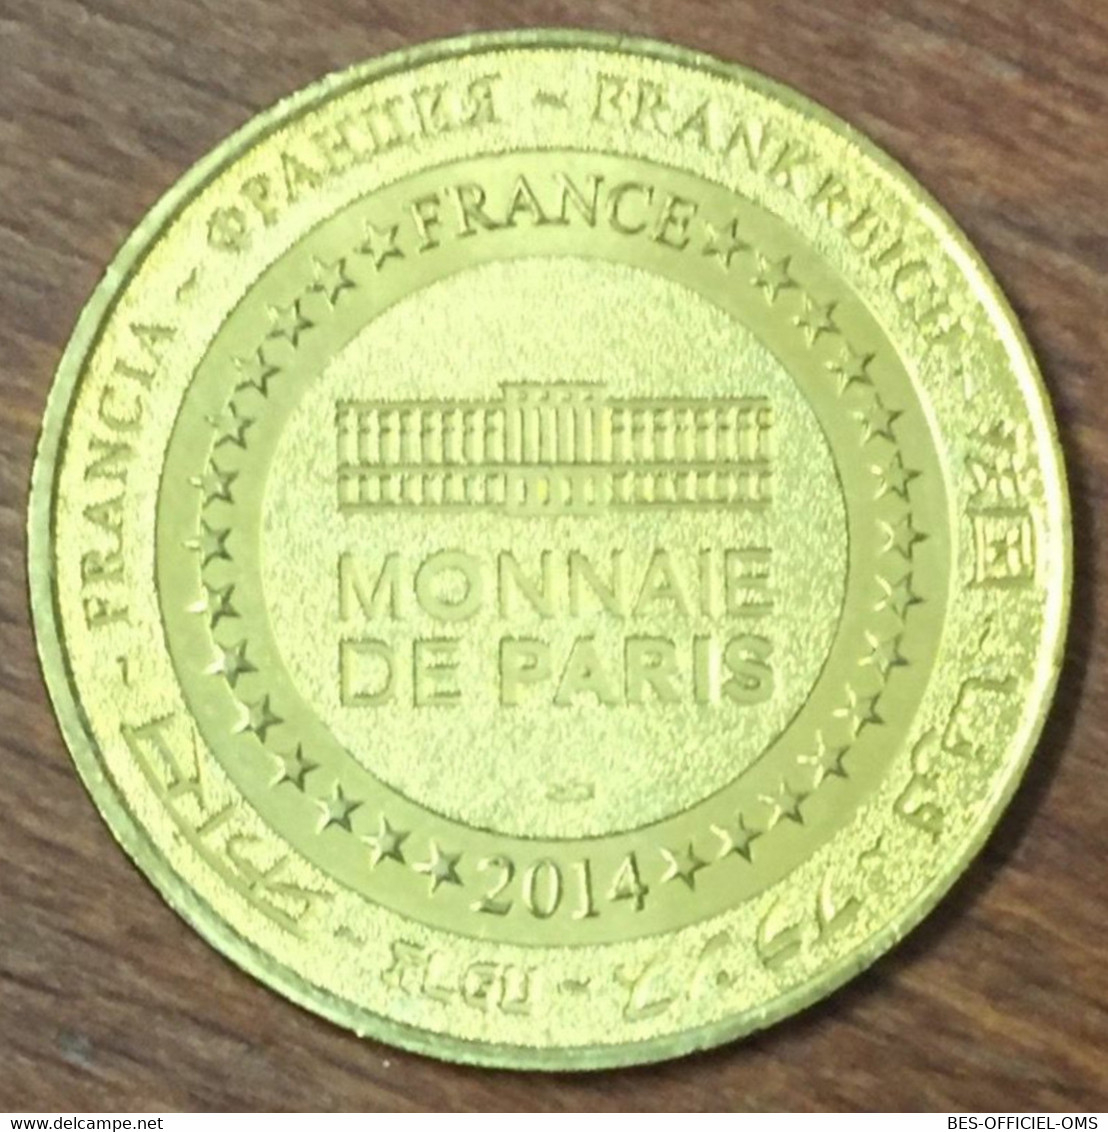 52 COLOMBEY LES DEUX ÉGLISES PARCOURS DE GAULLE MDP 2014 MEDAILLE MONNAIE DE PARIS JETON TOURISTIQUE MEDALS COINS TOKENS - 2014